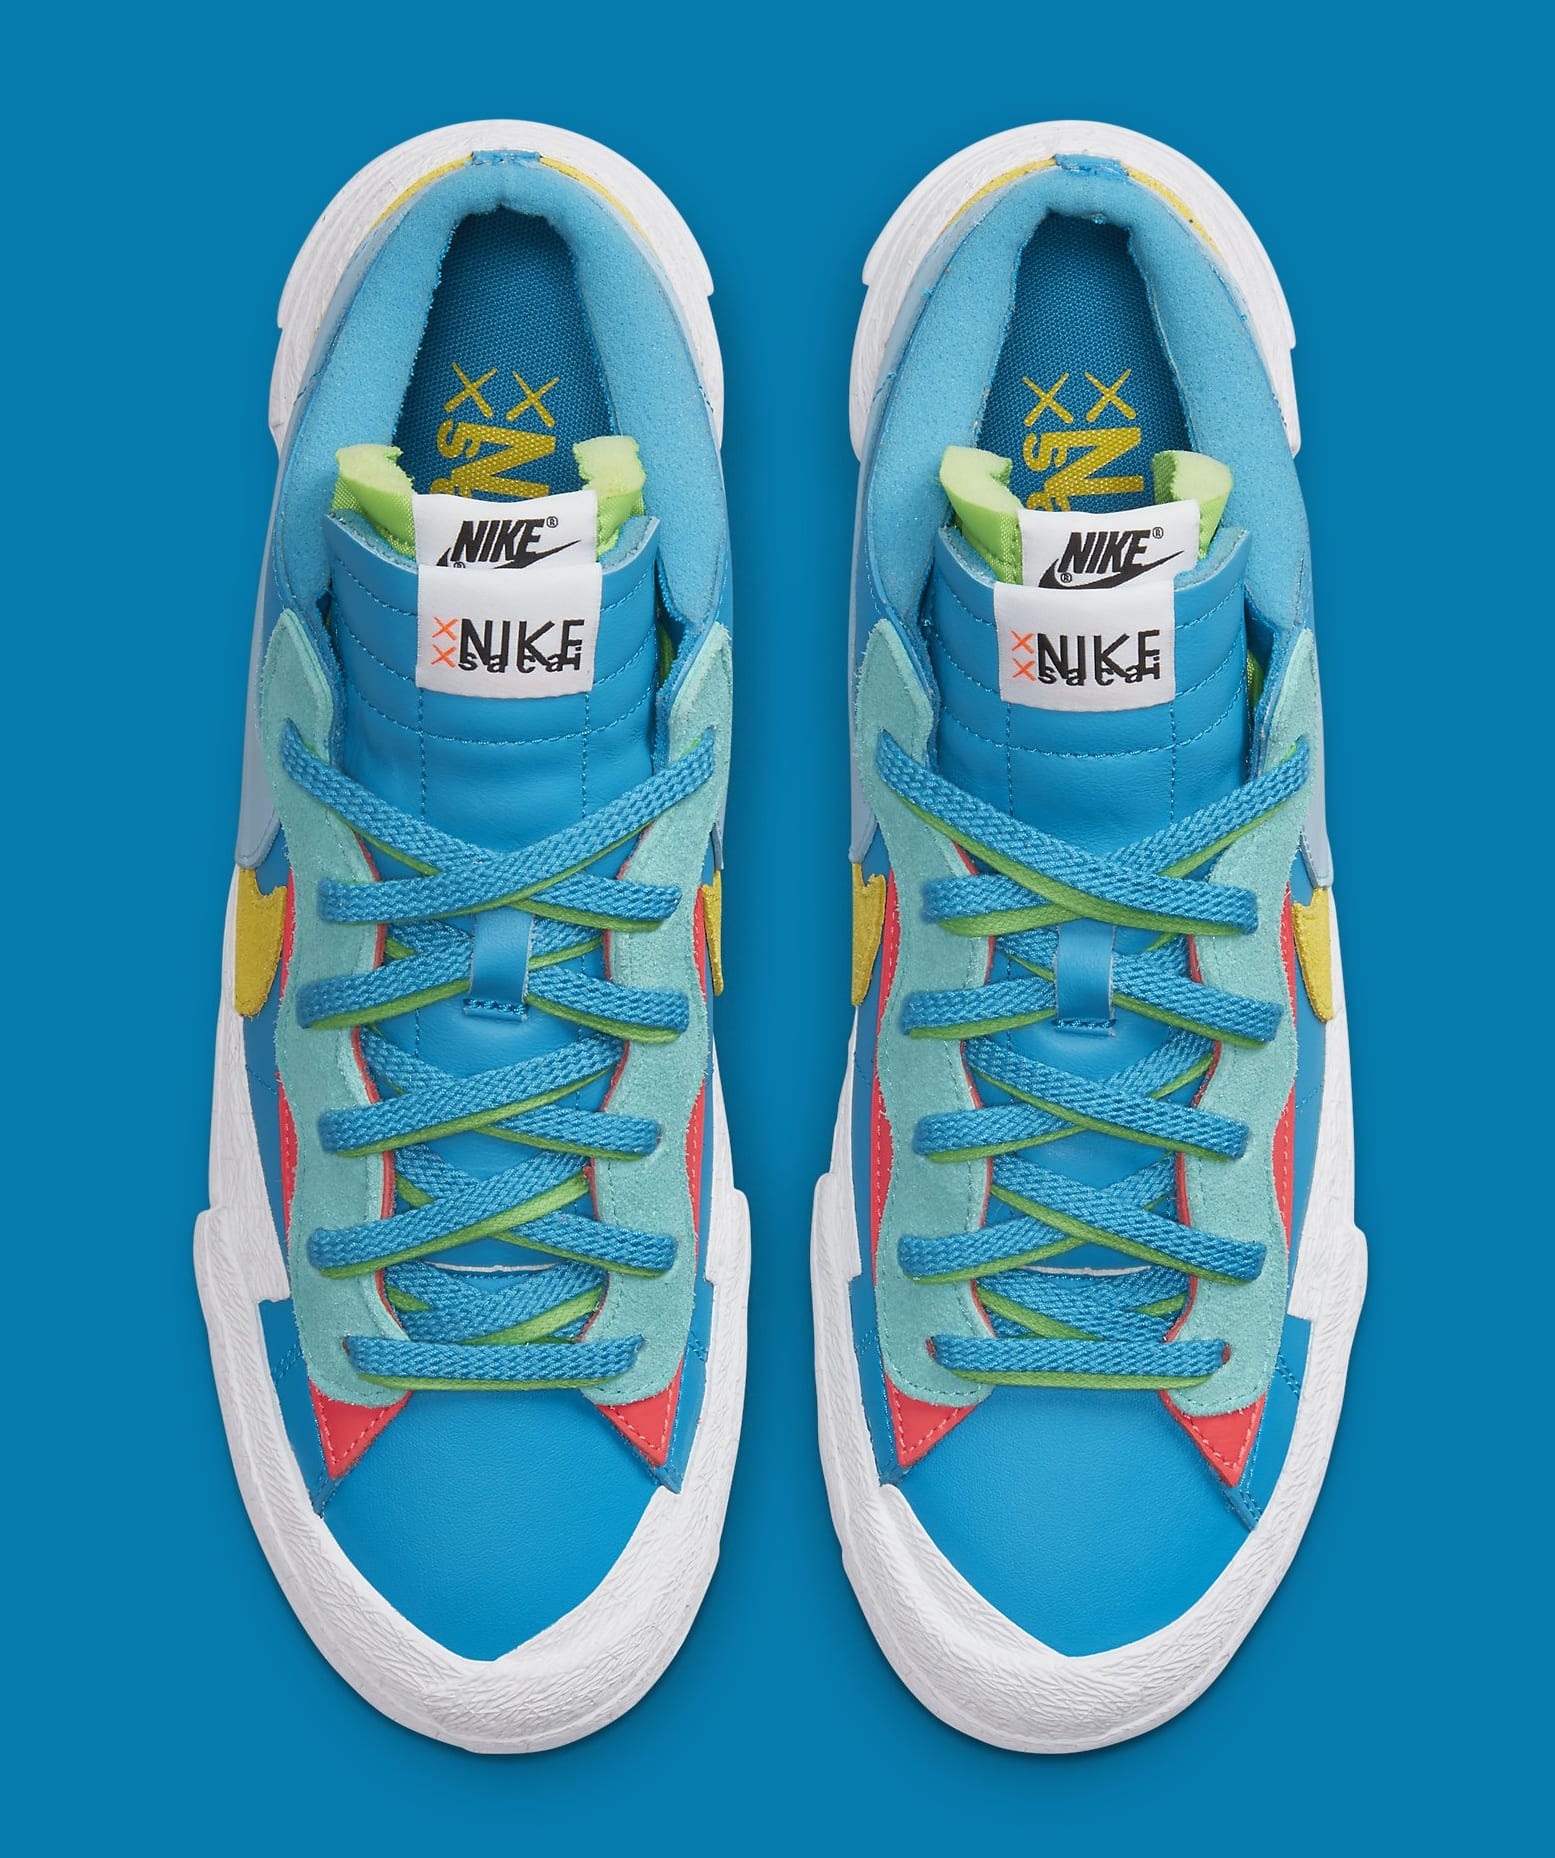 Kaws x Sacai x Nike Blazer Low 'Blue' DM7901 400 (Top)